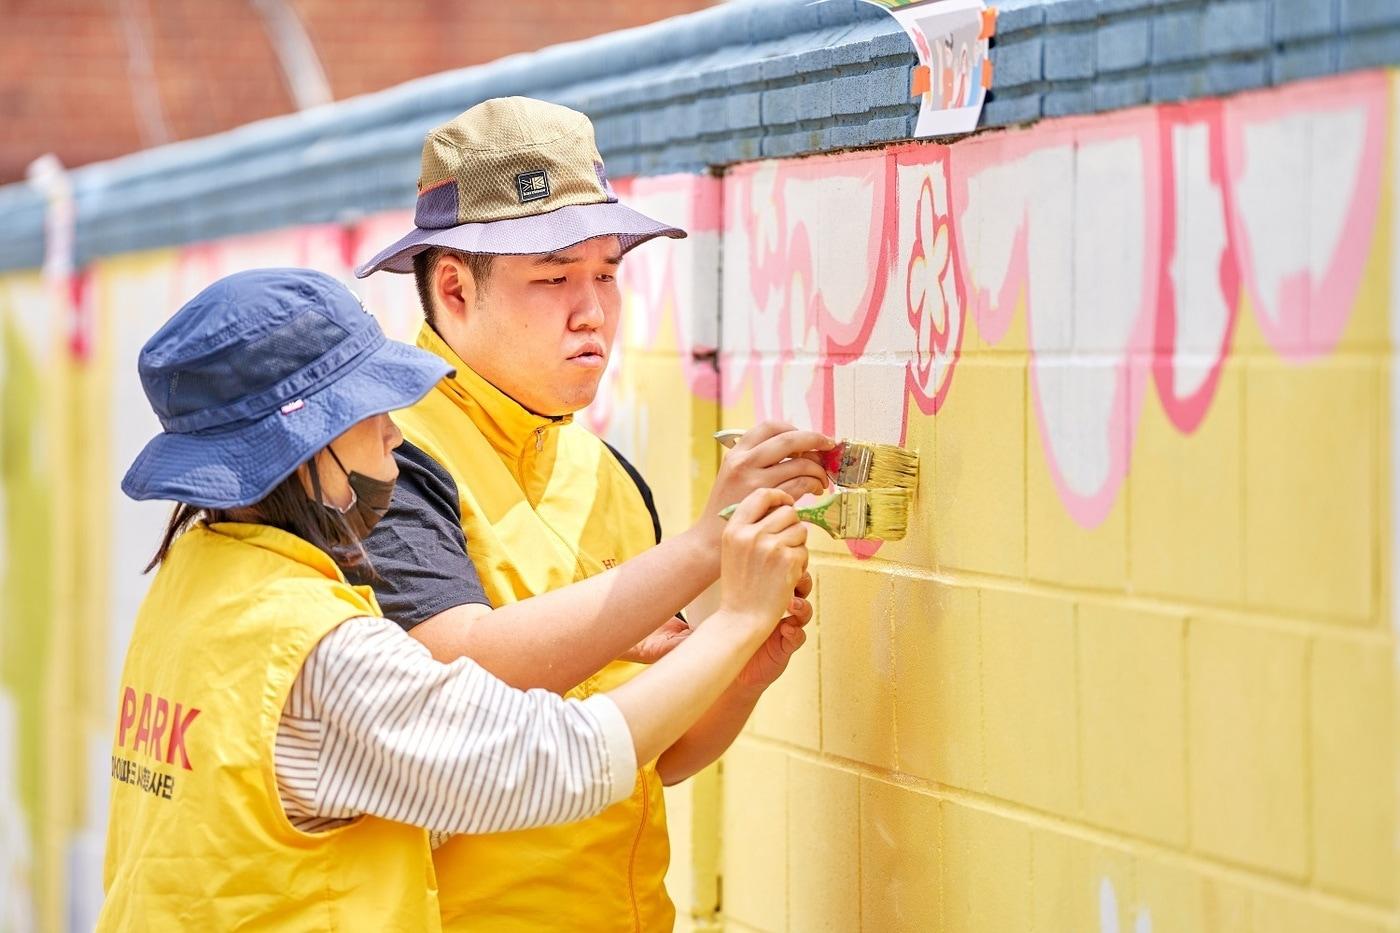 HDC현대산업개발은 지난 24일 HDC그룹사 연합봉사에 참여해 용산구 관내 삼광초 어린이와 인근 주민들의 거주환경 개선을 위한 벽화 그리기 봉사활동을 진행했다&#40;HDC현산 제공&#41;.